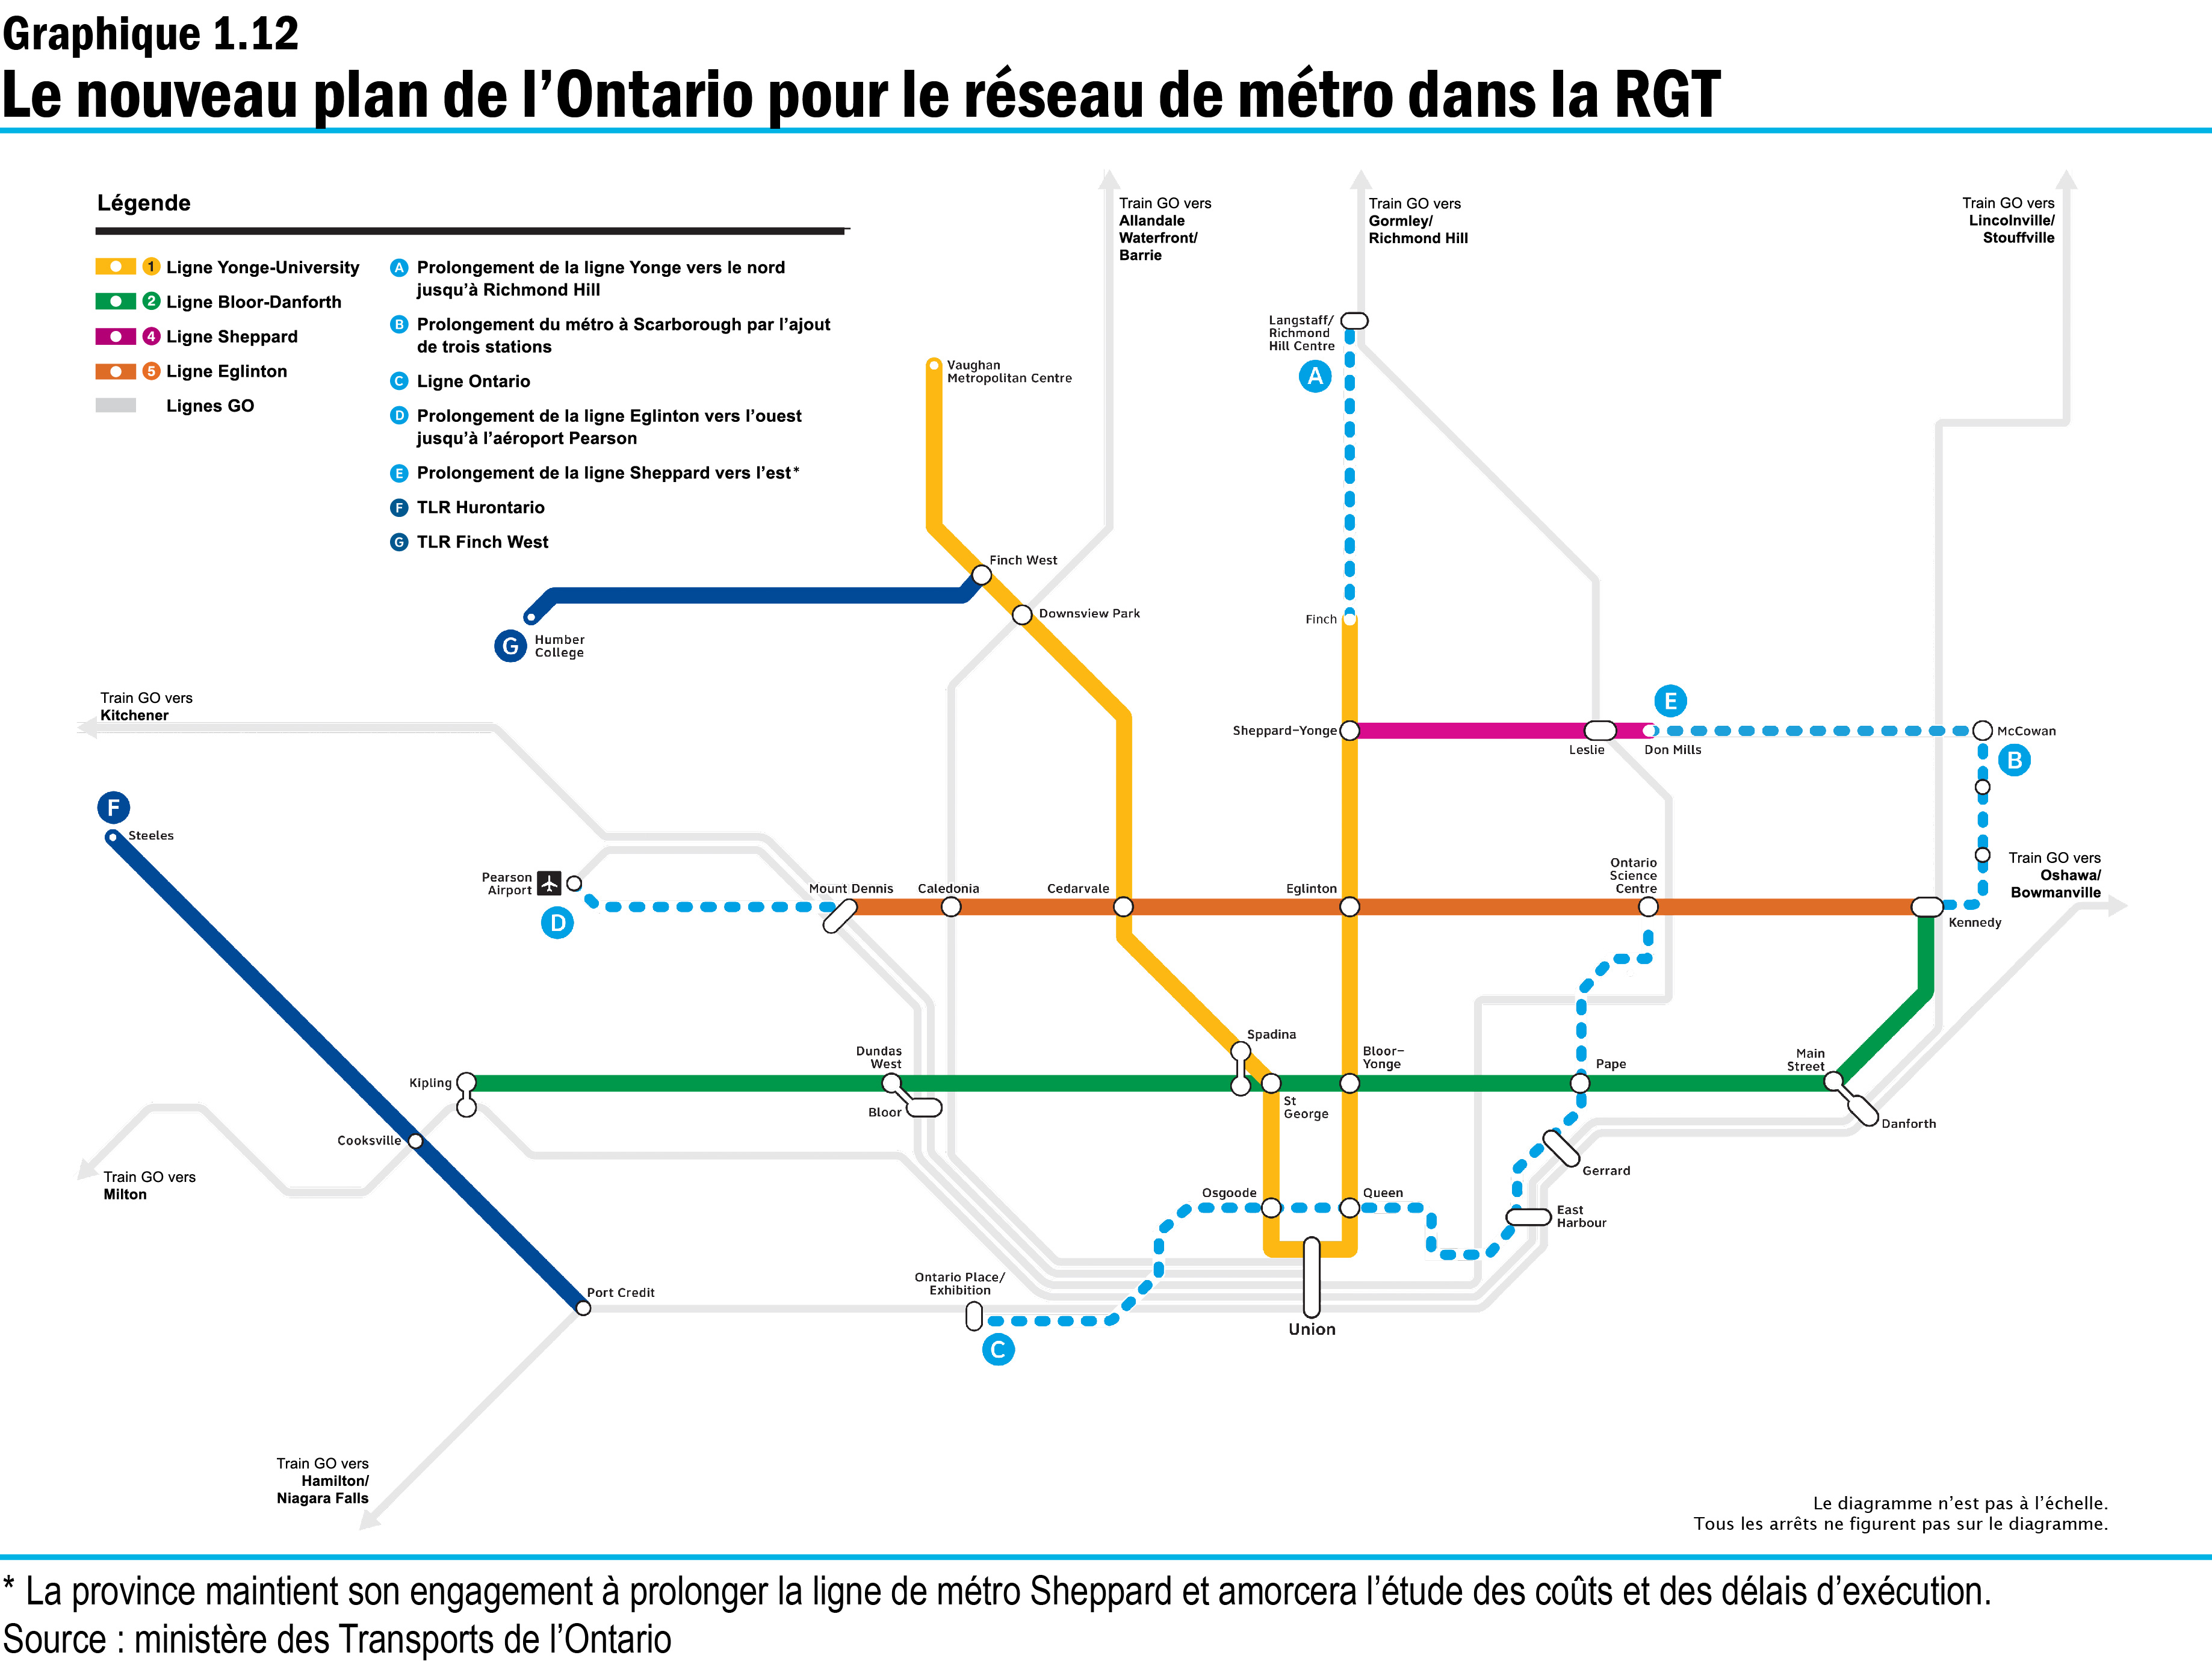 Graphique 1.12 : Le nouveau plan de l’Ontario pour le réseau de métro dans la RGT